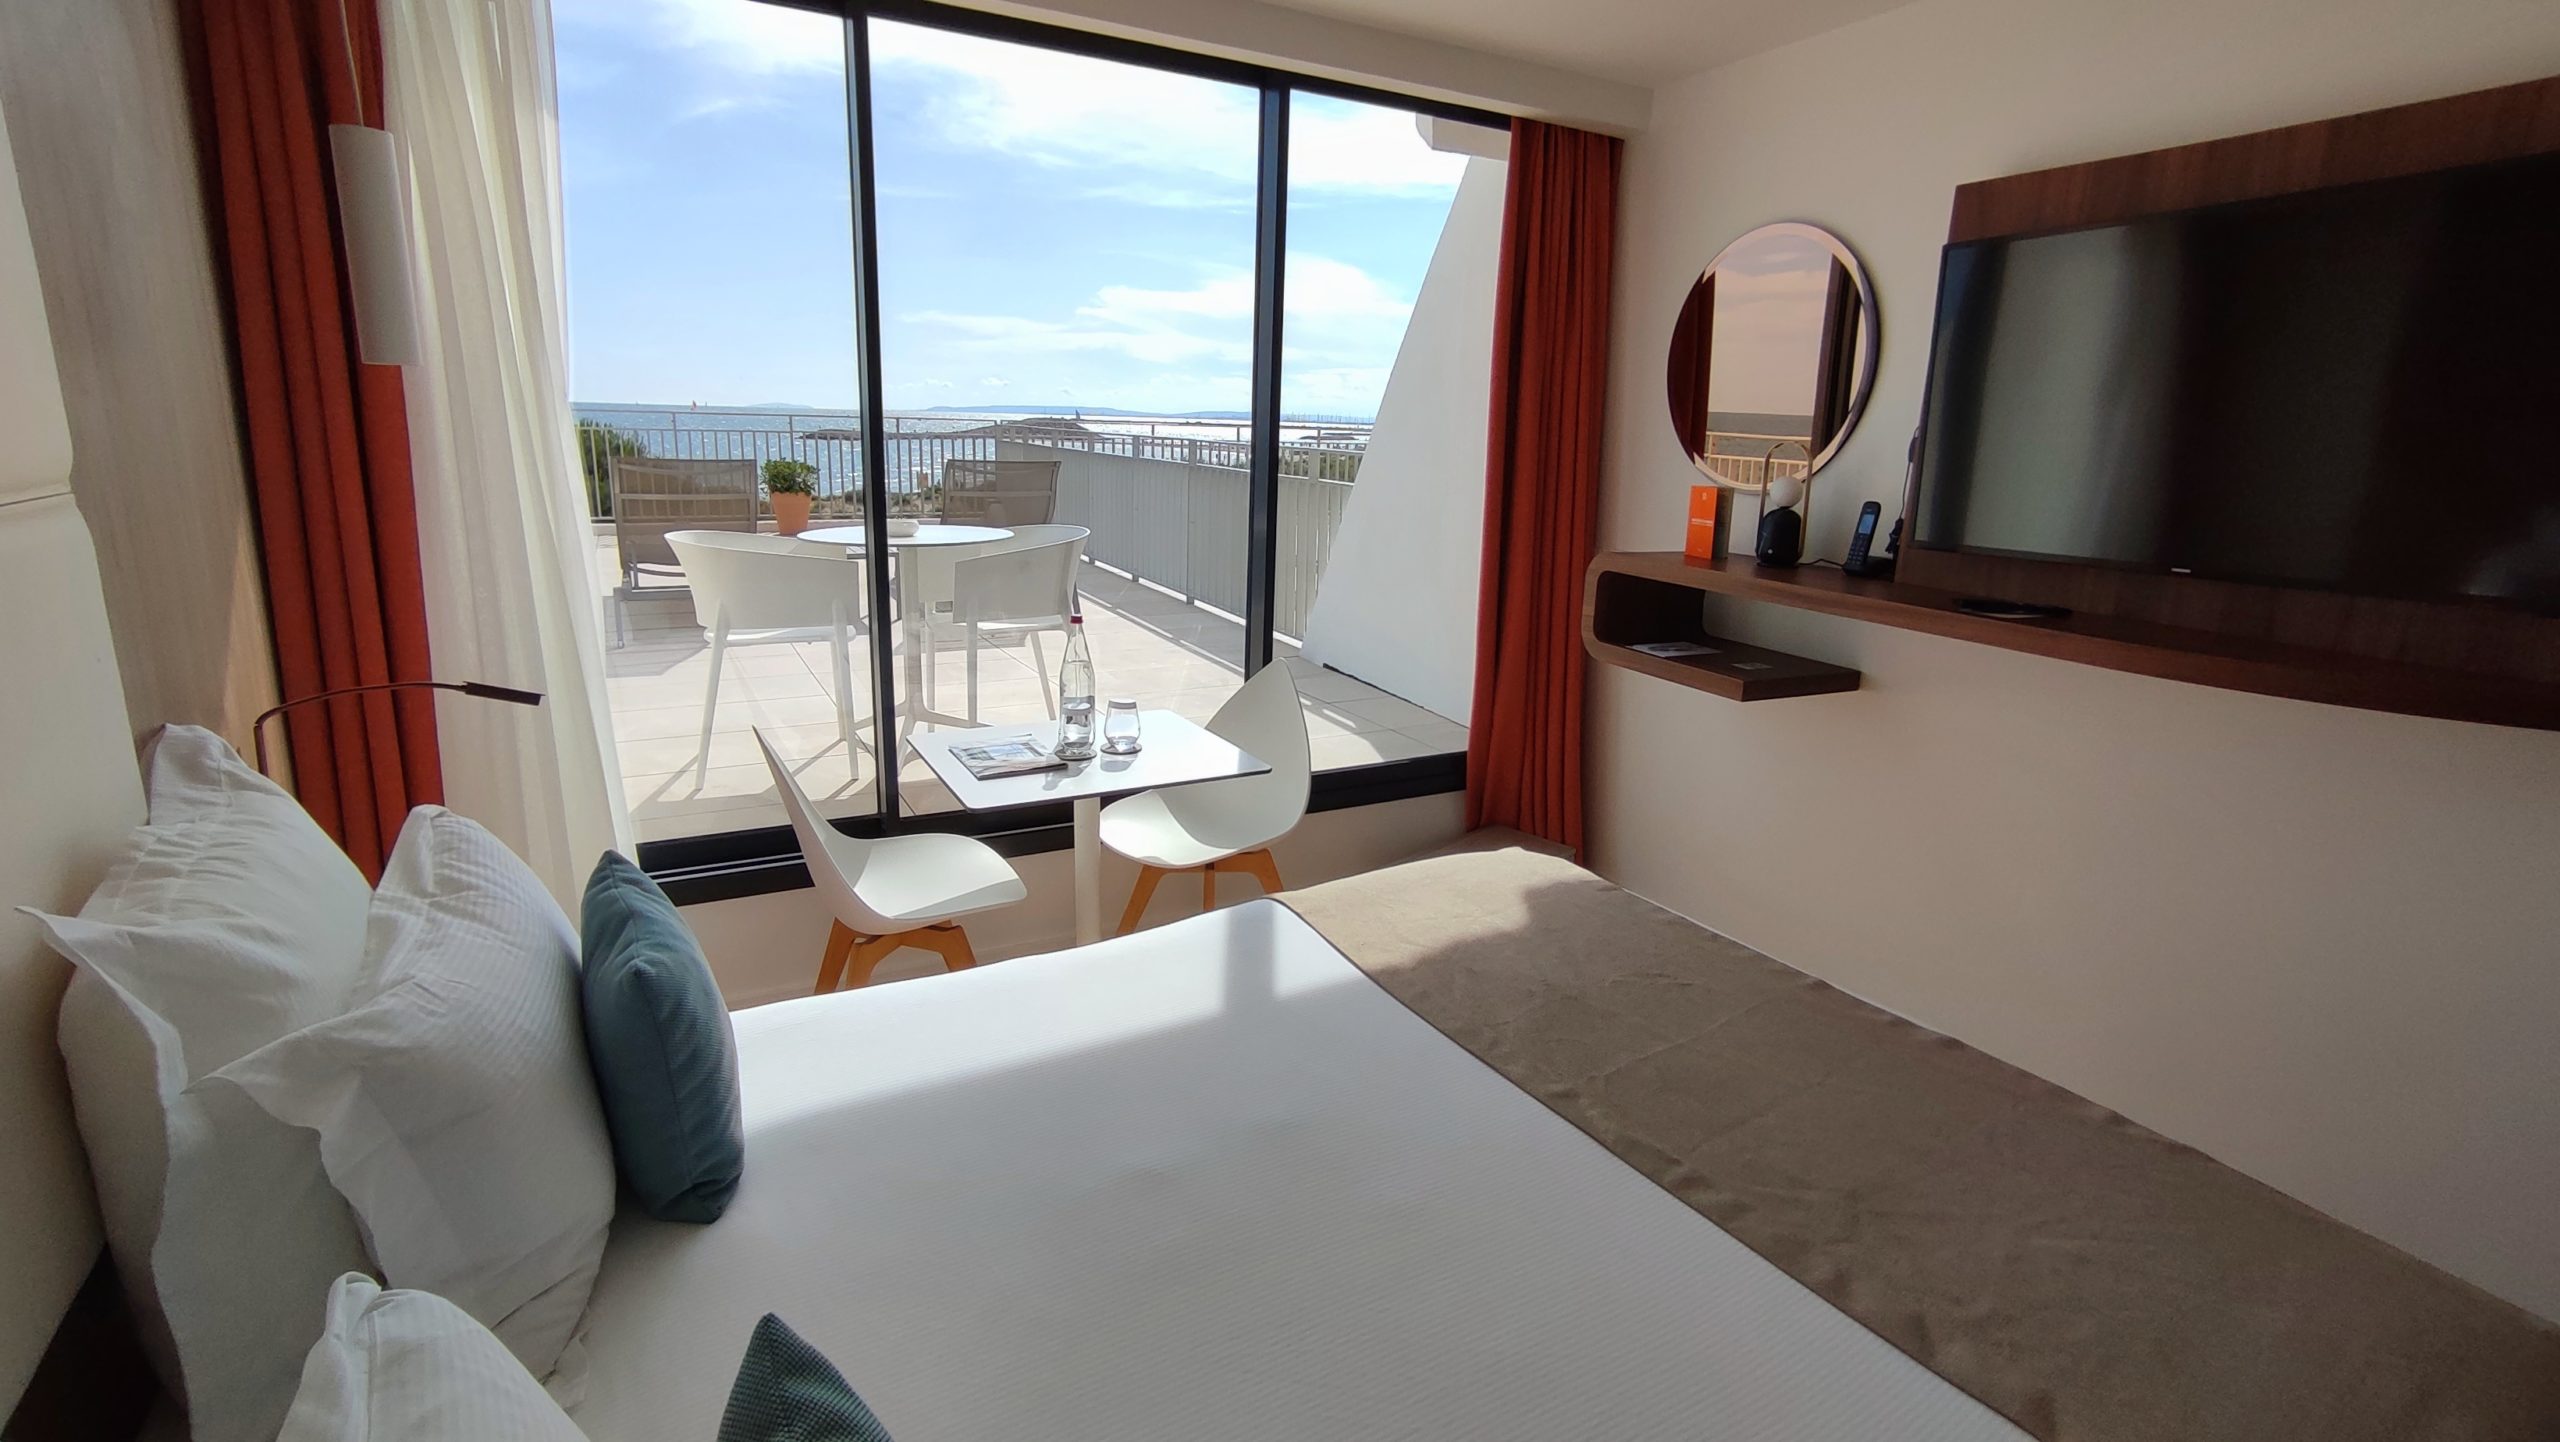 chambre avec grande terrasse vue sur la plage - hotel plage méditerranée - hotel la plage